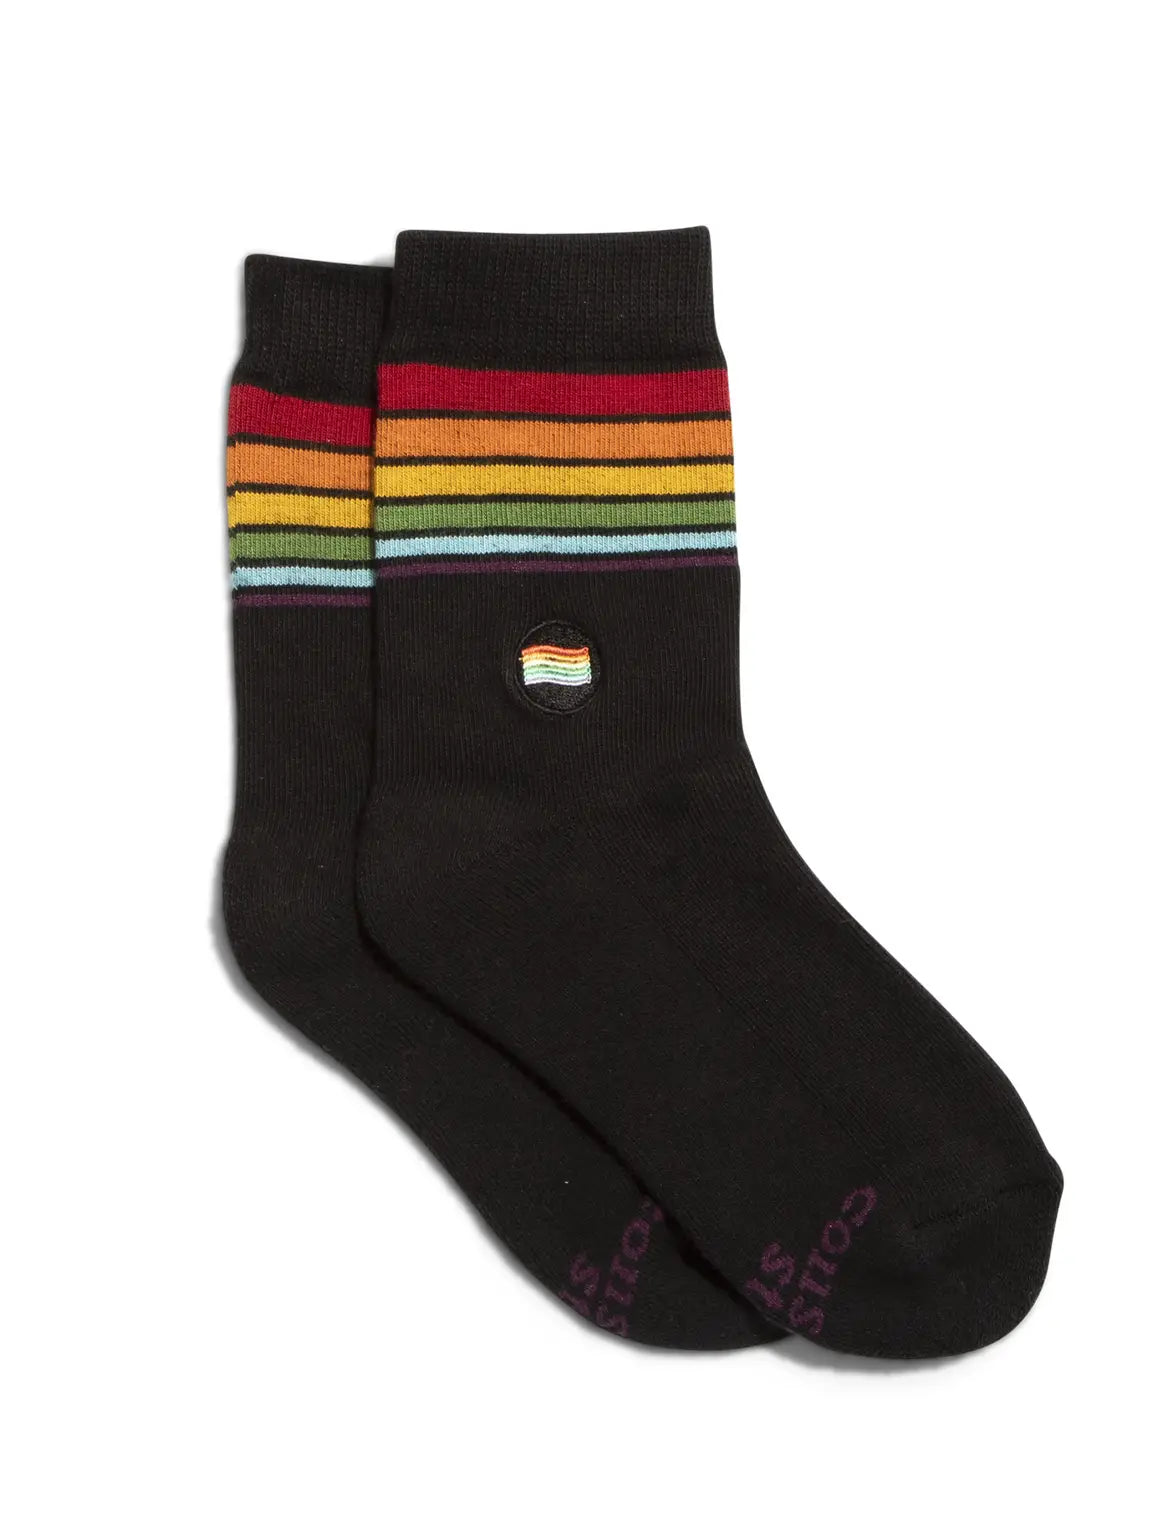 Kids Socks that Save LGBTQ+ Lives